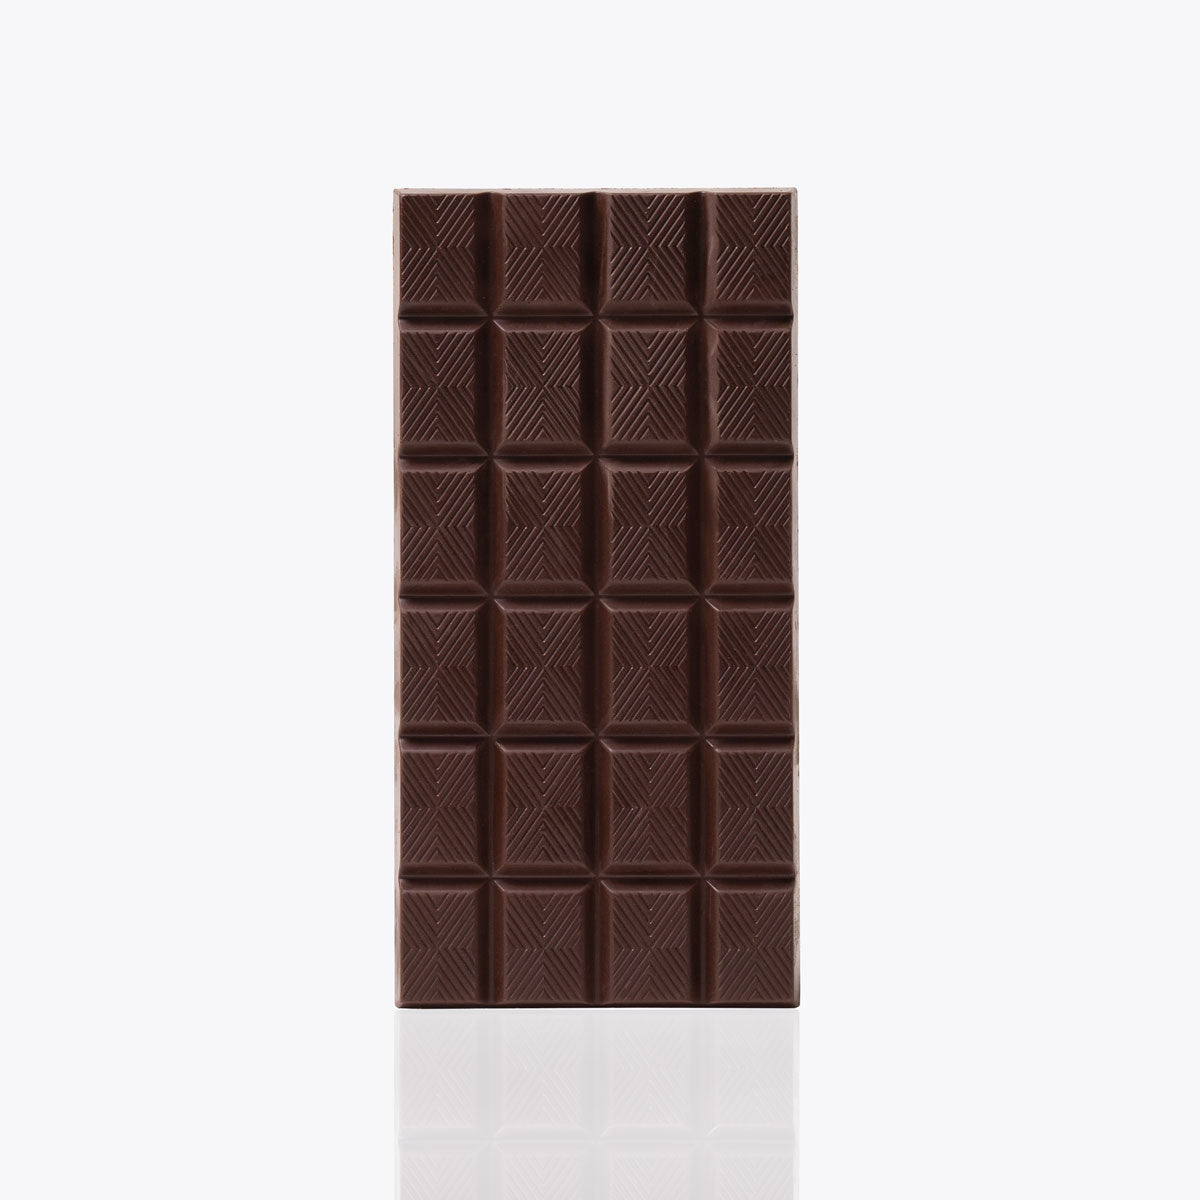  Tableta 99% Cacao - 100g